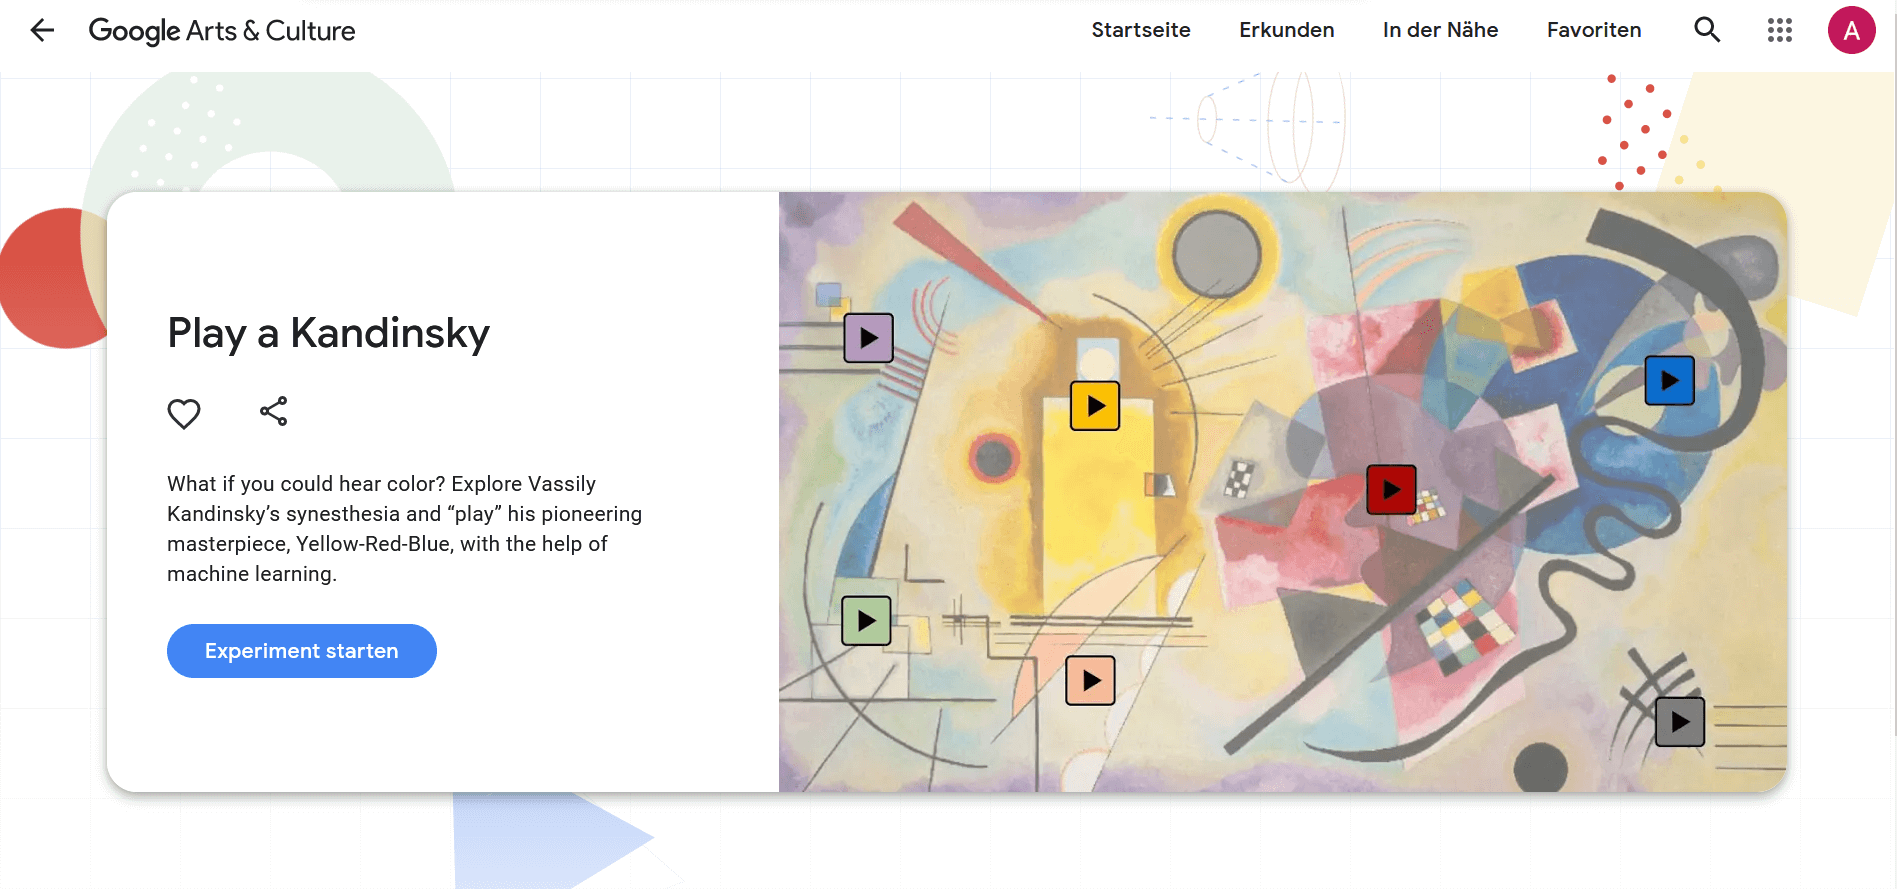 Kandinsky hören – mit dem Centre Pompidou und Google Arts & Culture